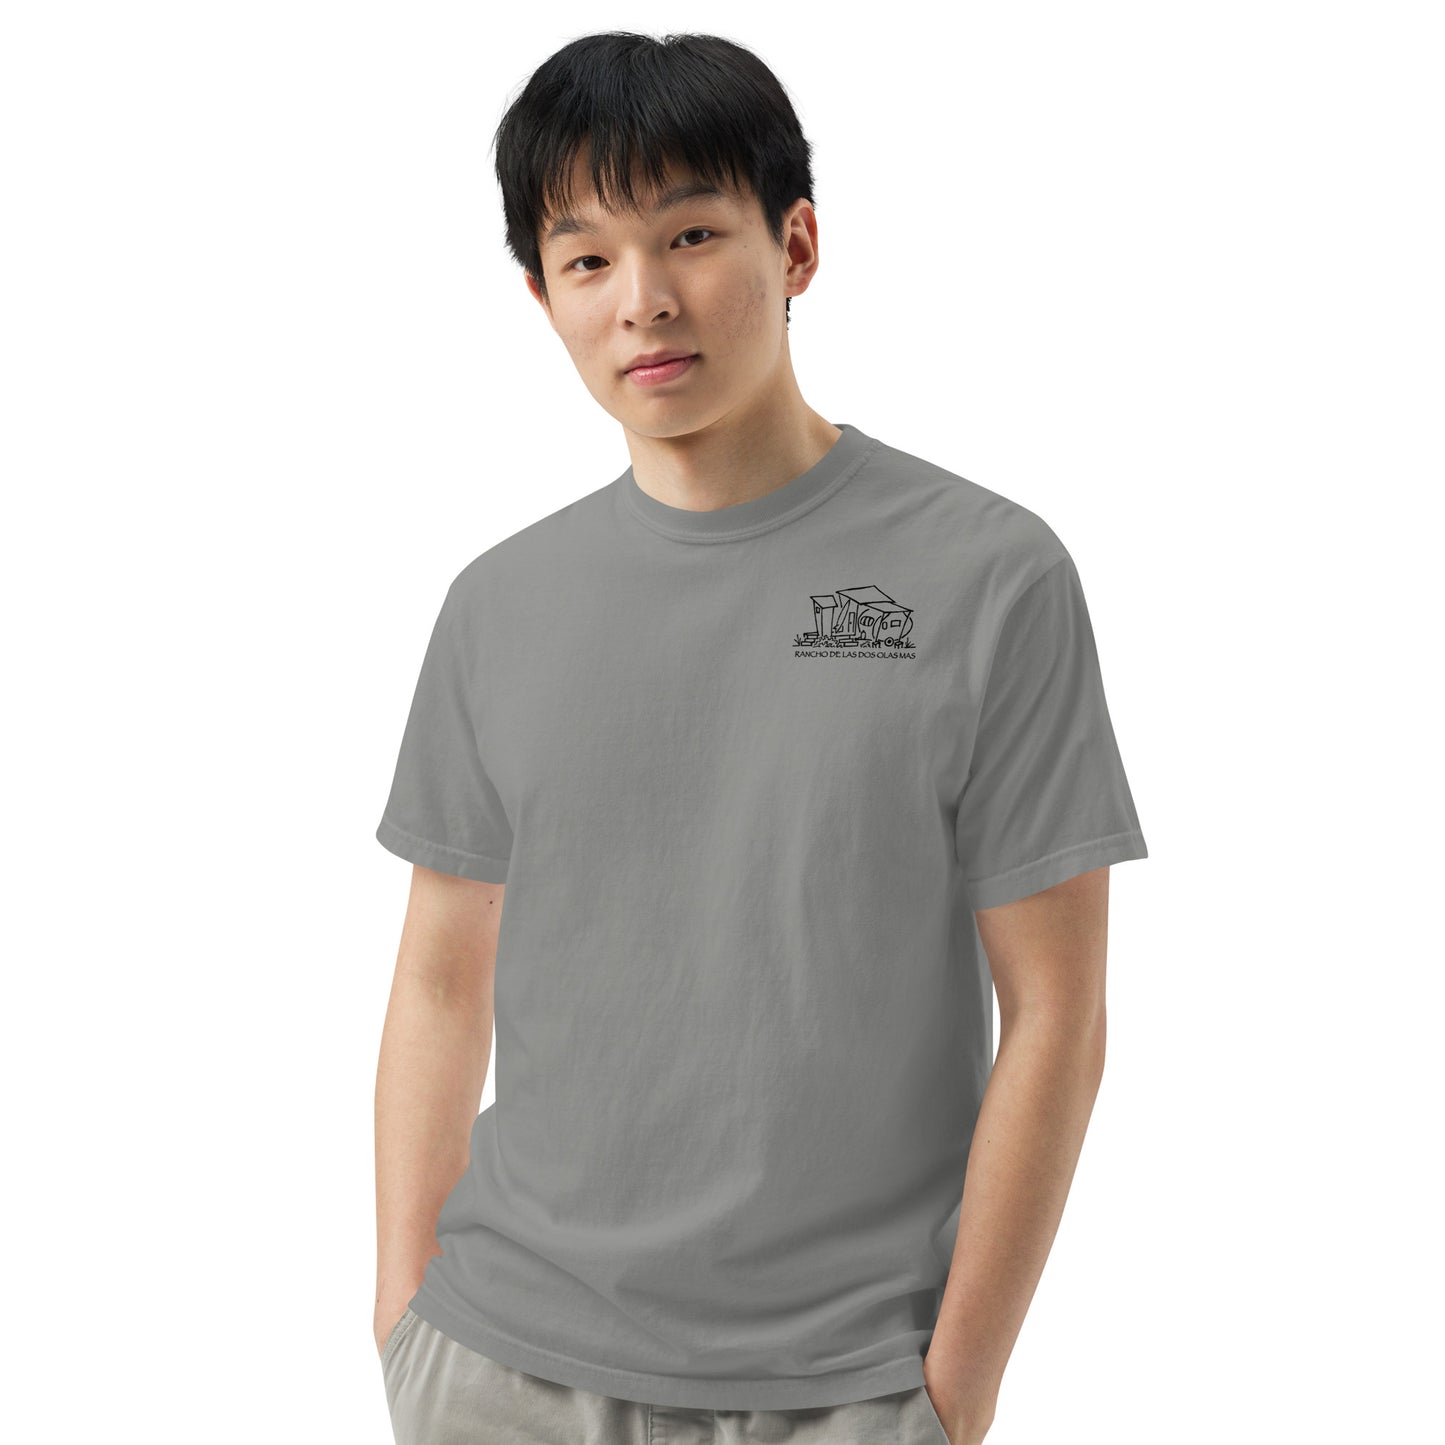 Men’s garment-dyed heavyweight t-shirt - Original